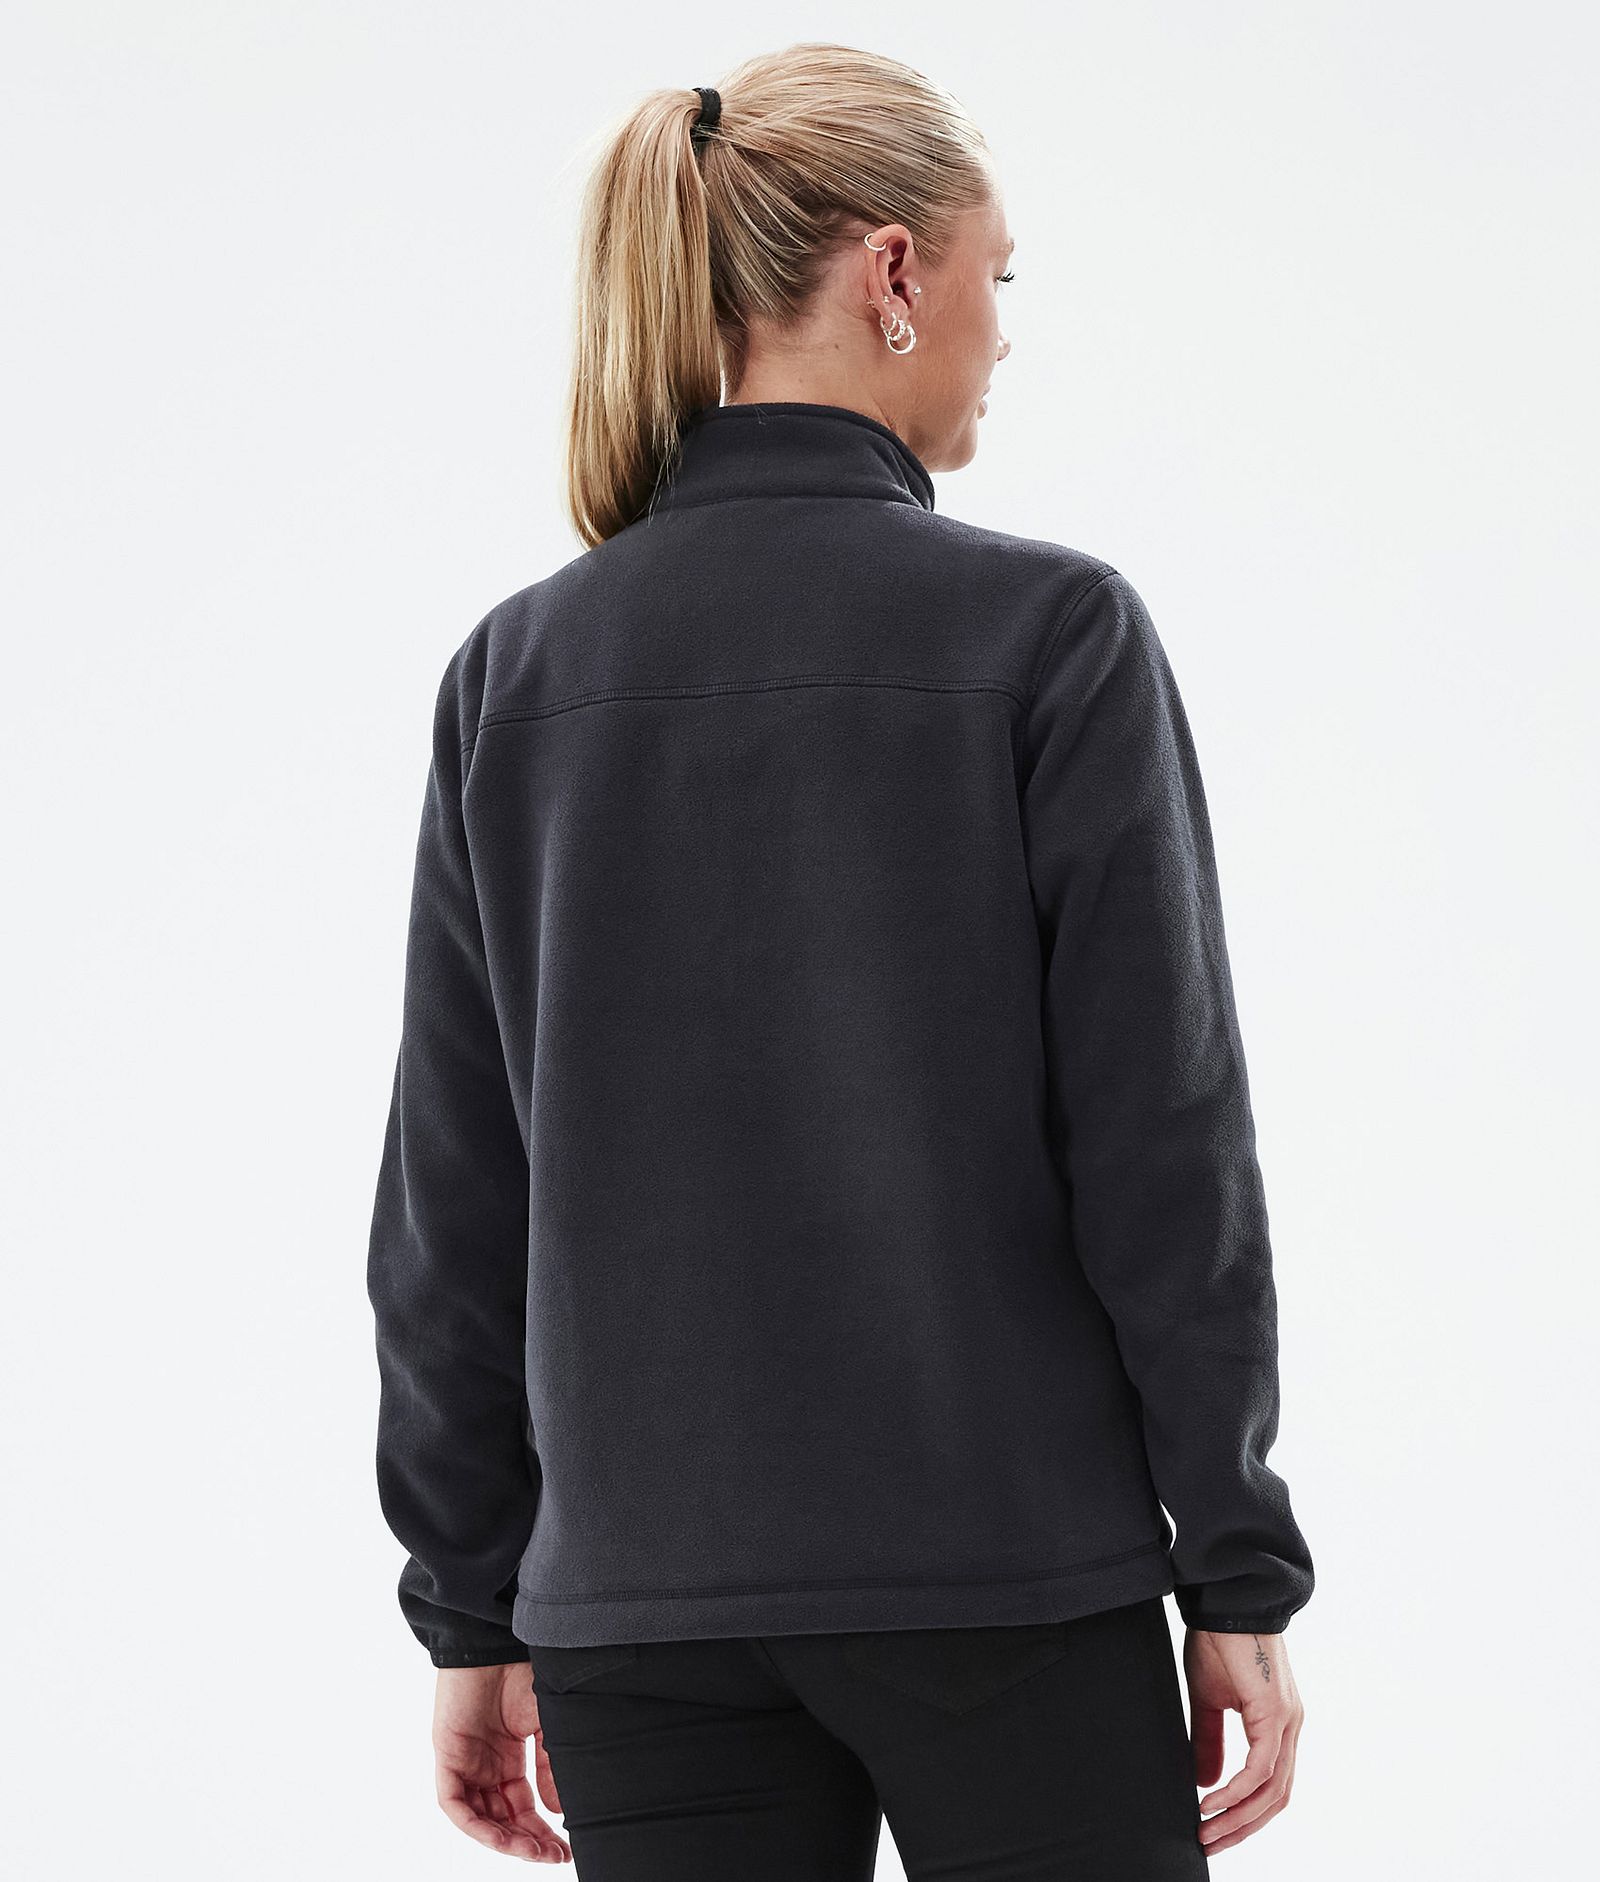 Echo W Fleece Sweater Women Black, Image 5 of 5